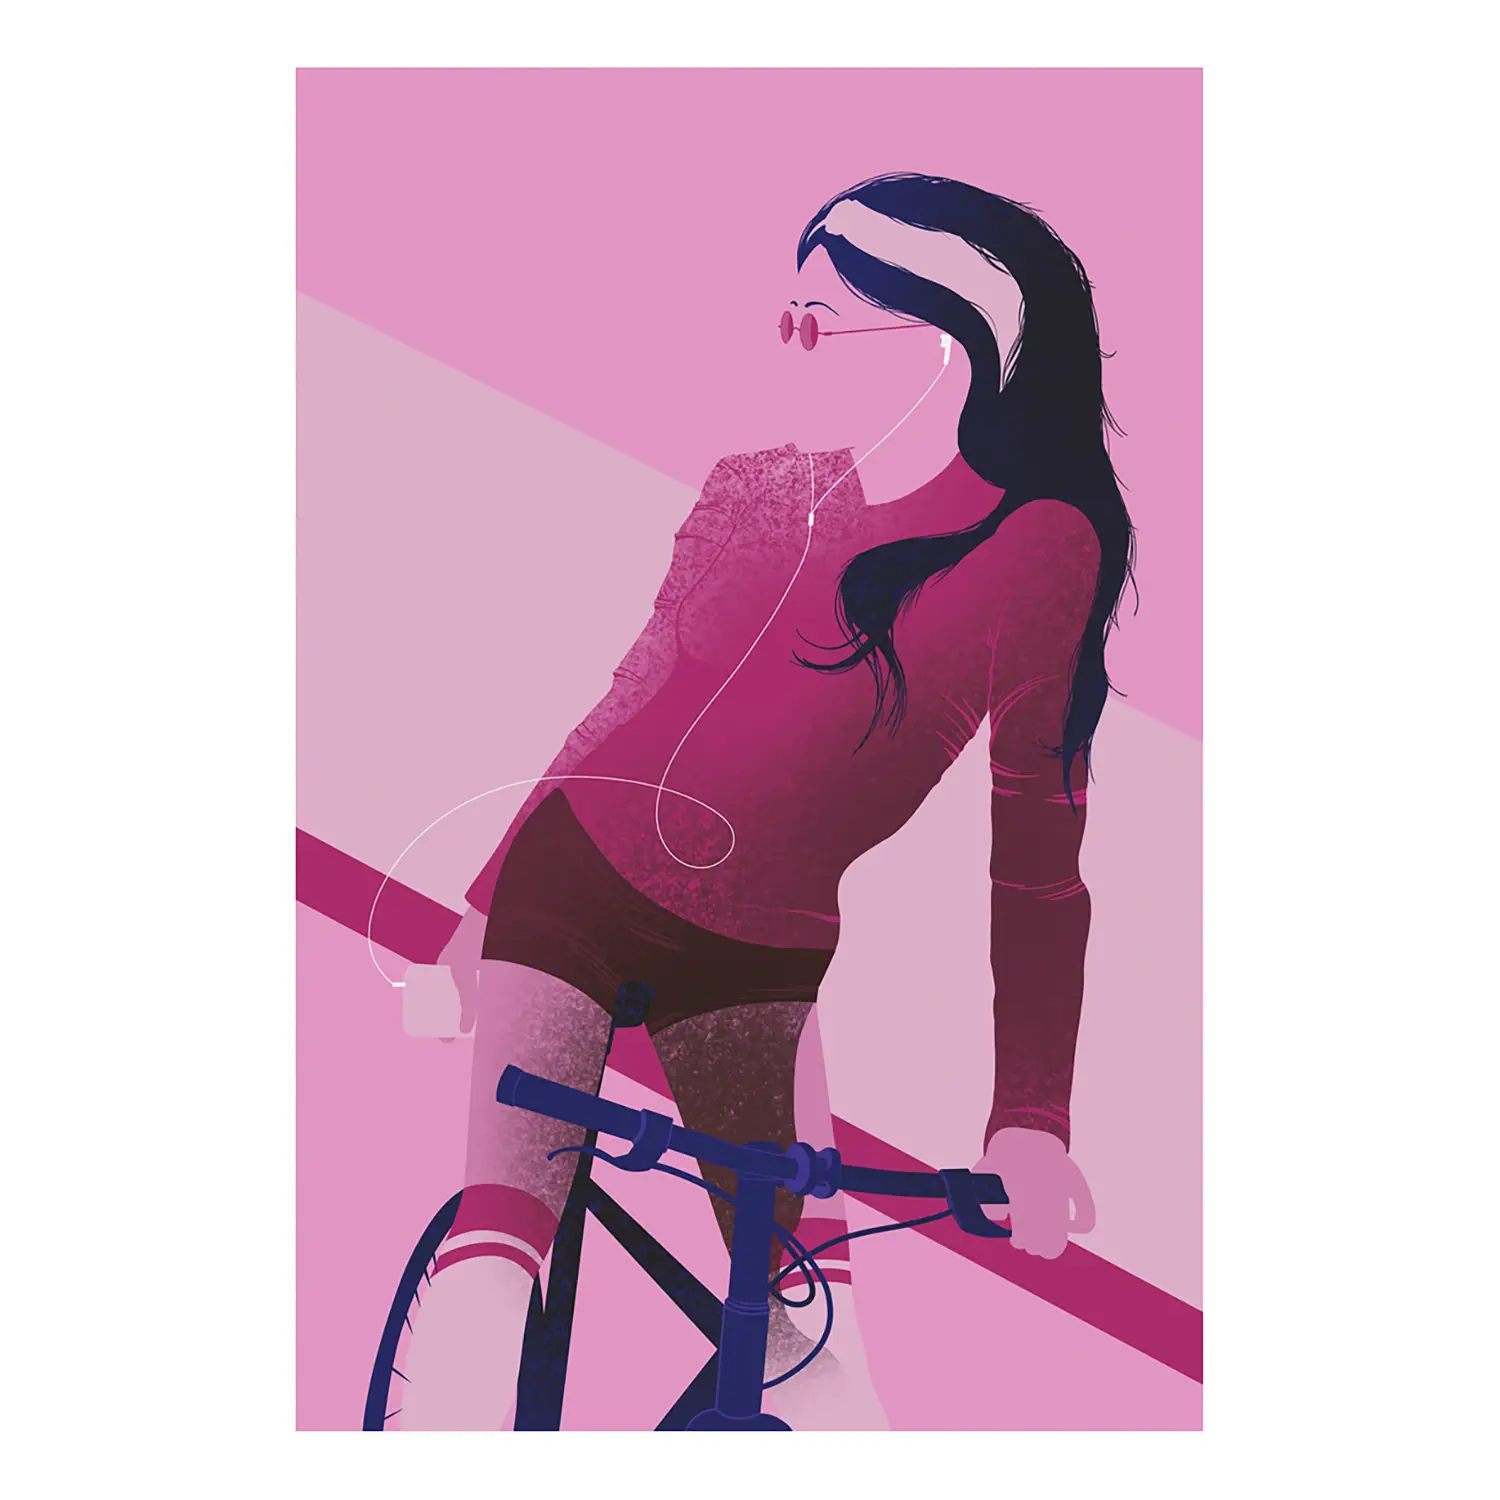 Wandbild Bicycle on Woman